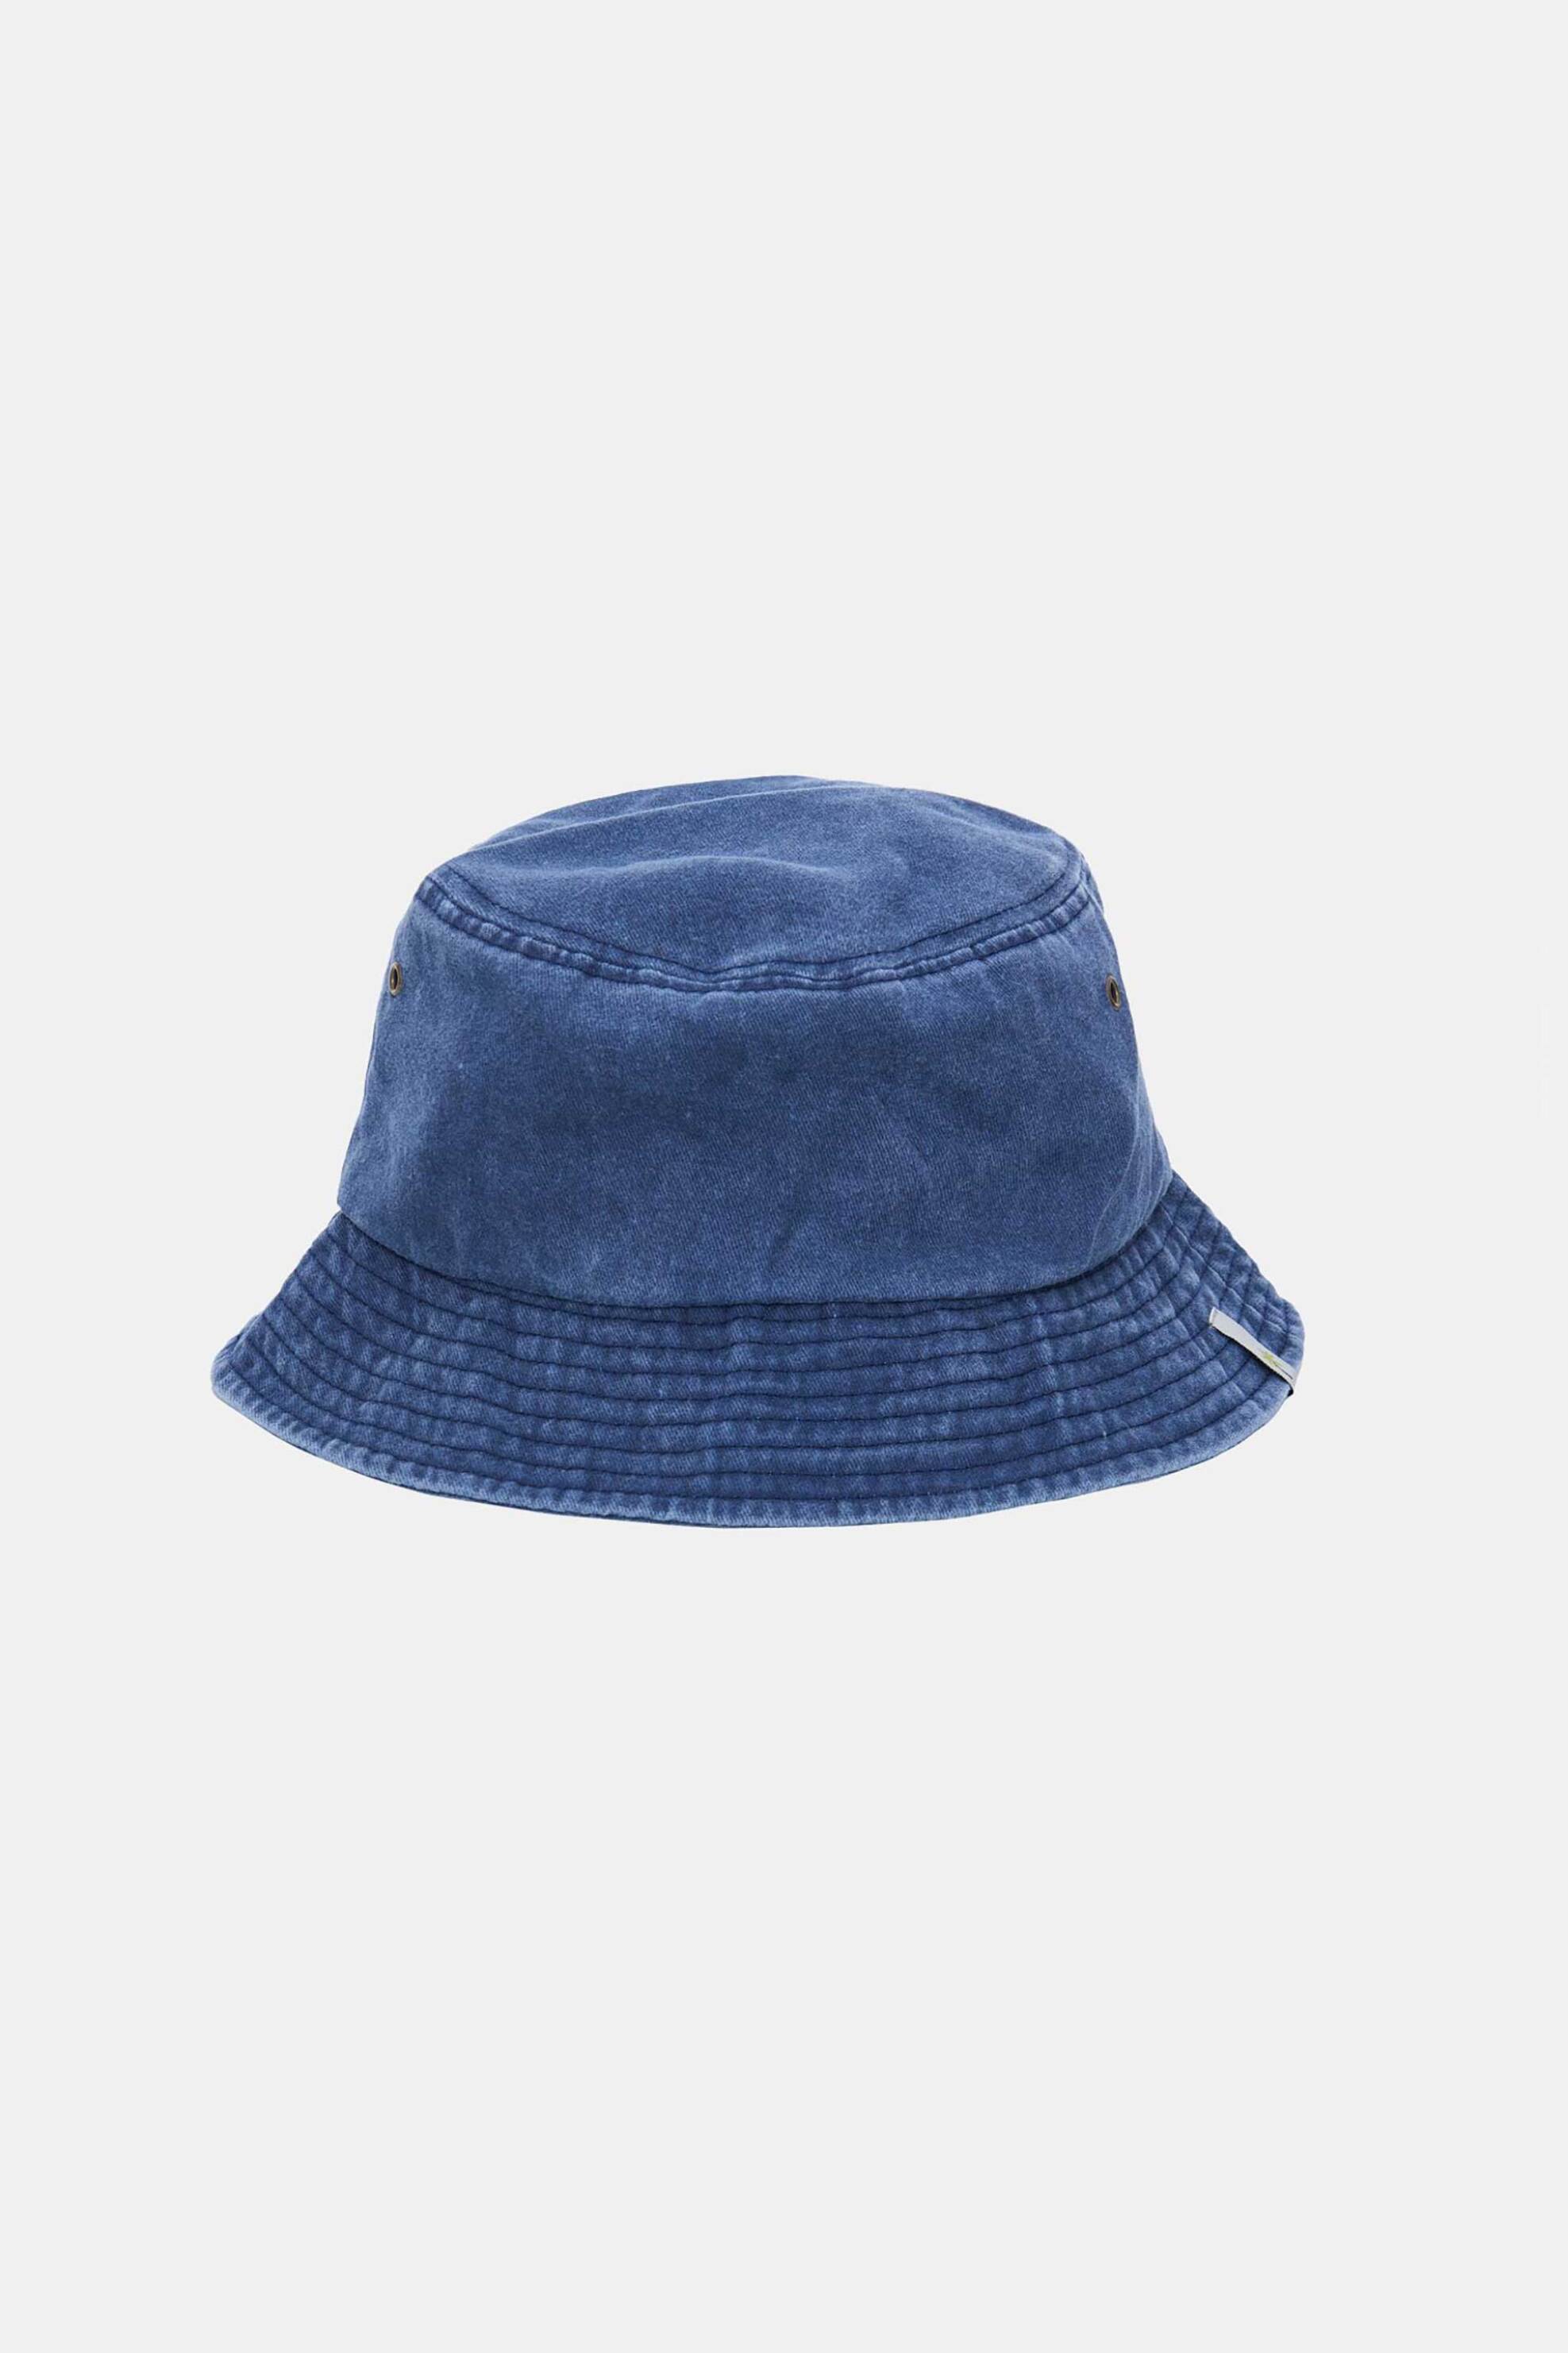 Ανδρική Μόδα > Ανδρικά Αξεσουάρ > Ανδρικά Καπέλα & Σκούφοι Funky Buddha ανδρικό βαμβακερό καπέλο bucket μονόχρωμο με patch στο γείσο - FBM007-060-10 Μπλε